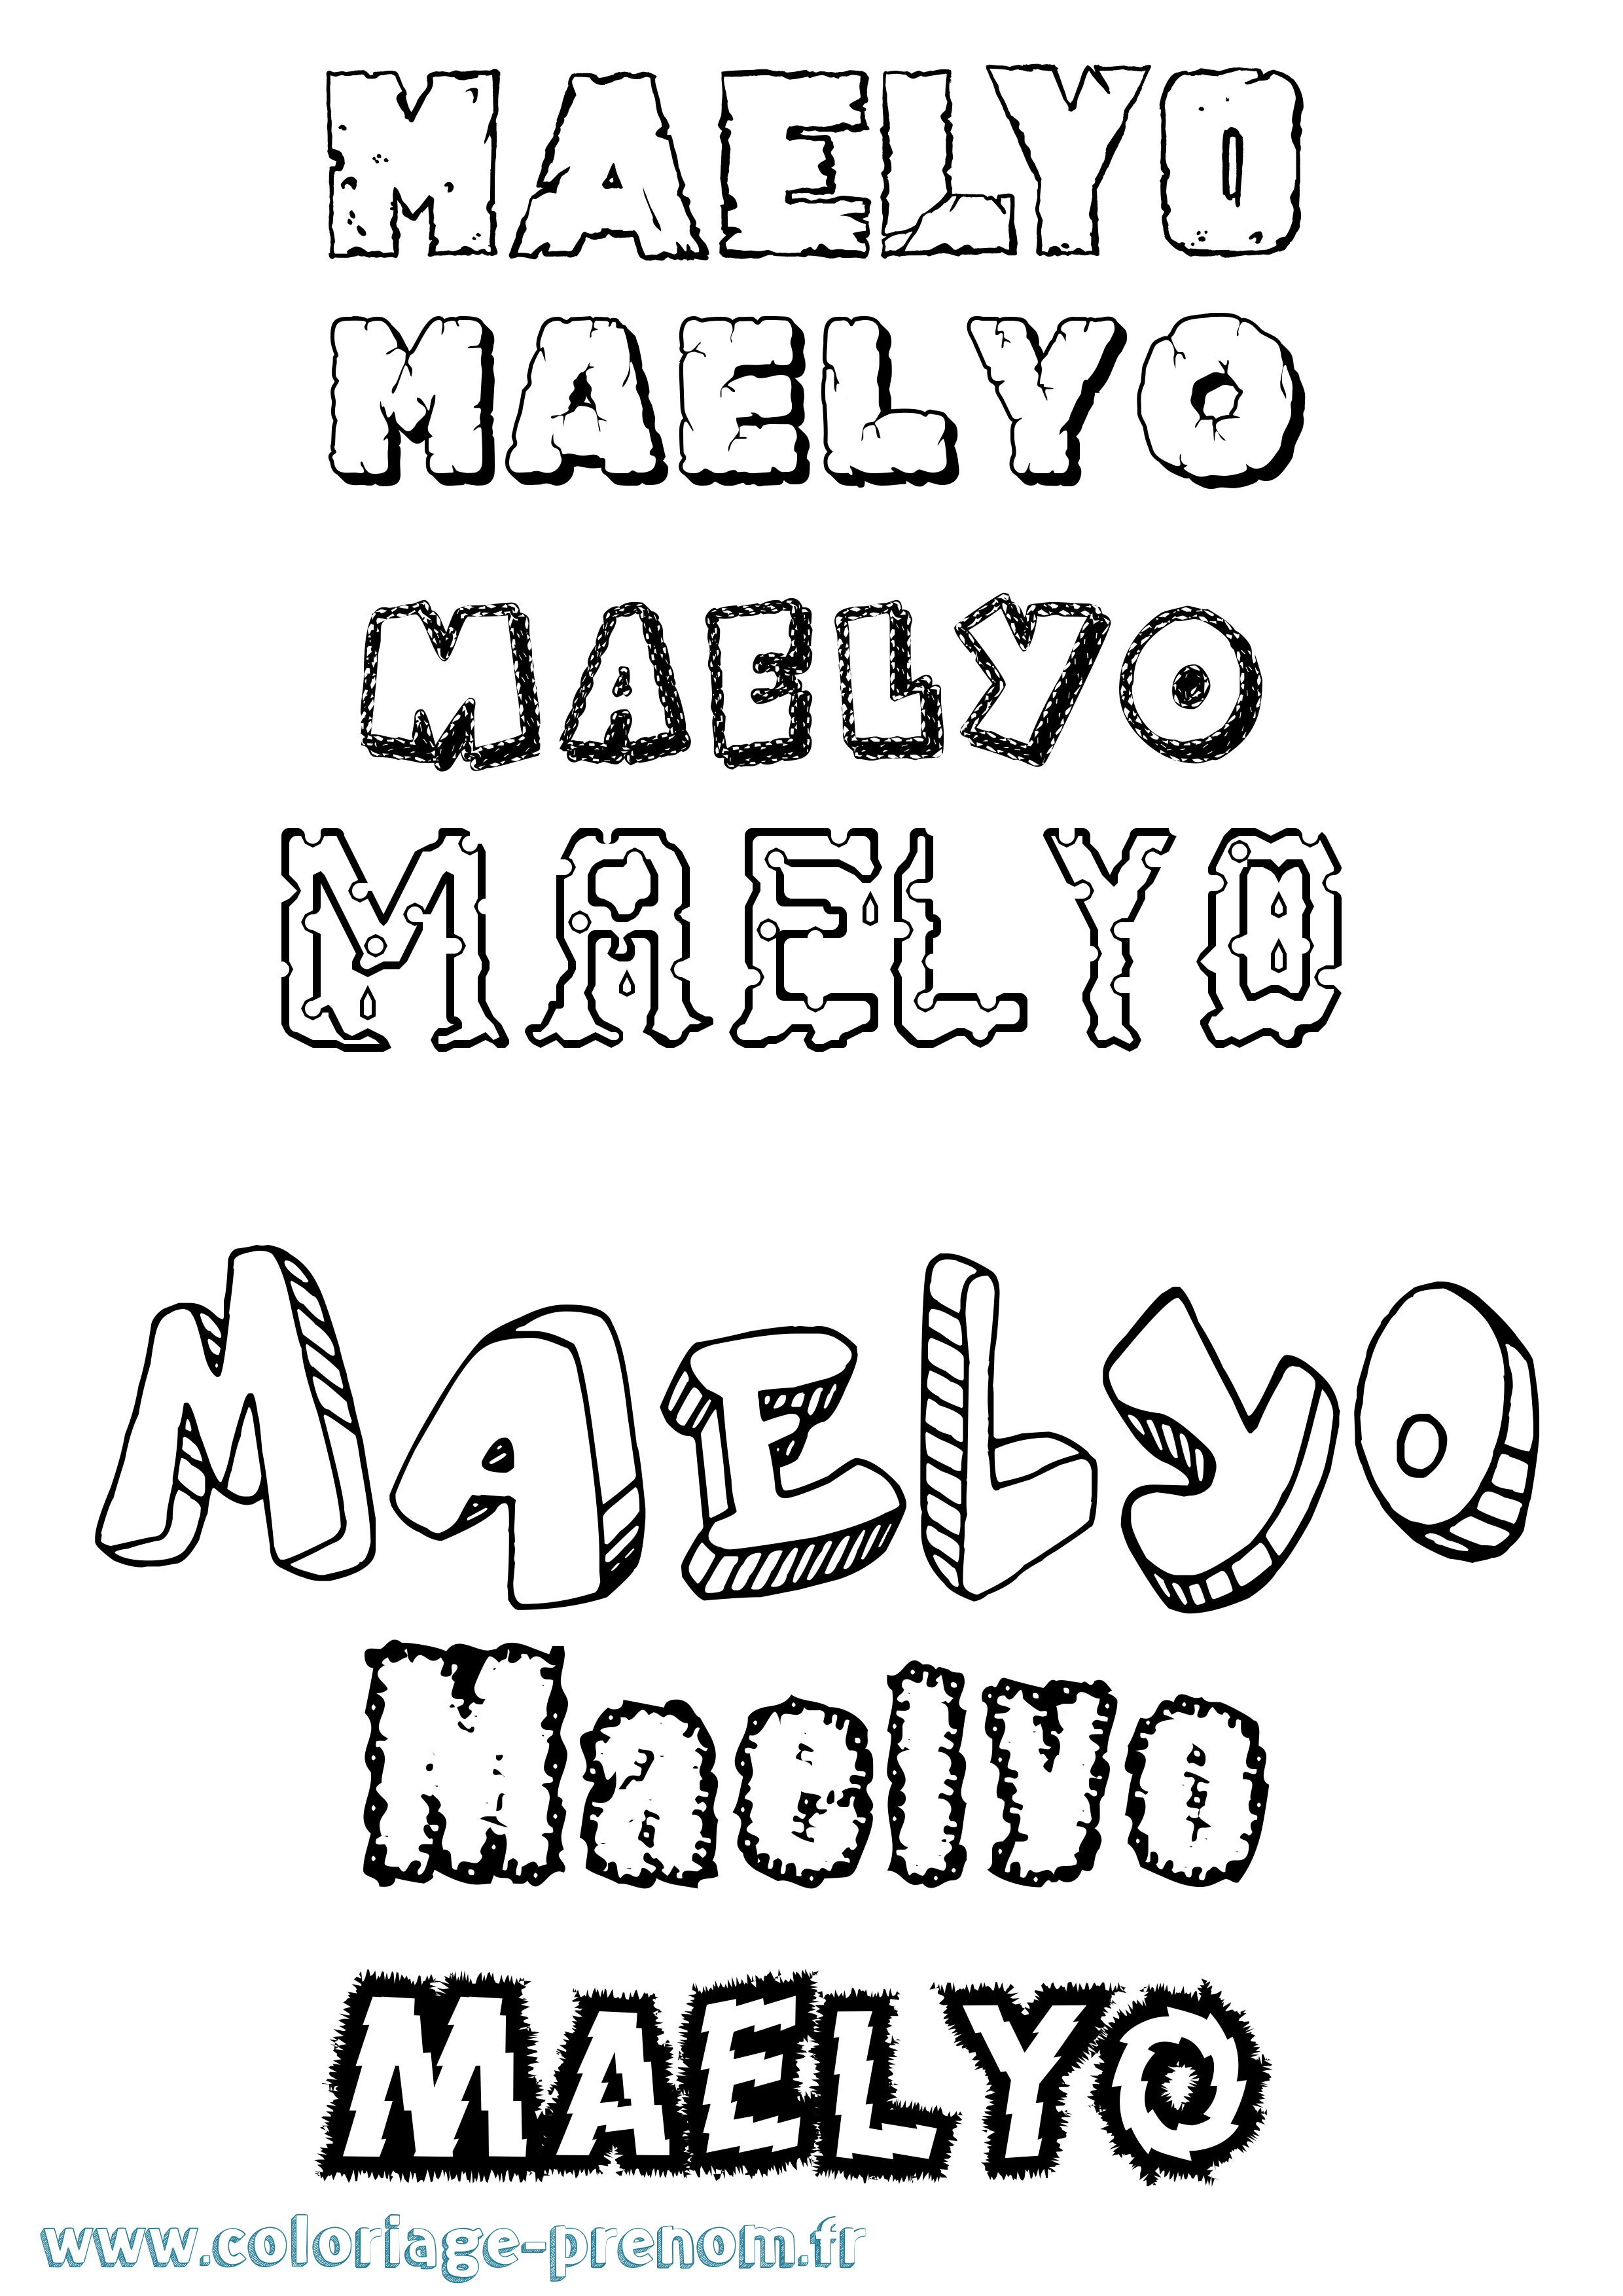 Coloriage prénom Maëlyo Destructuré